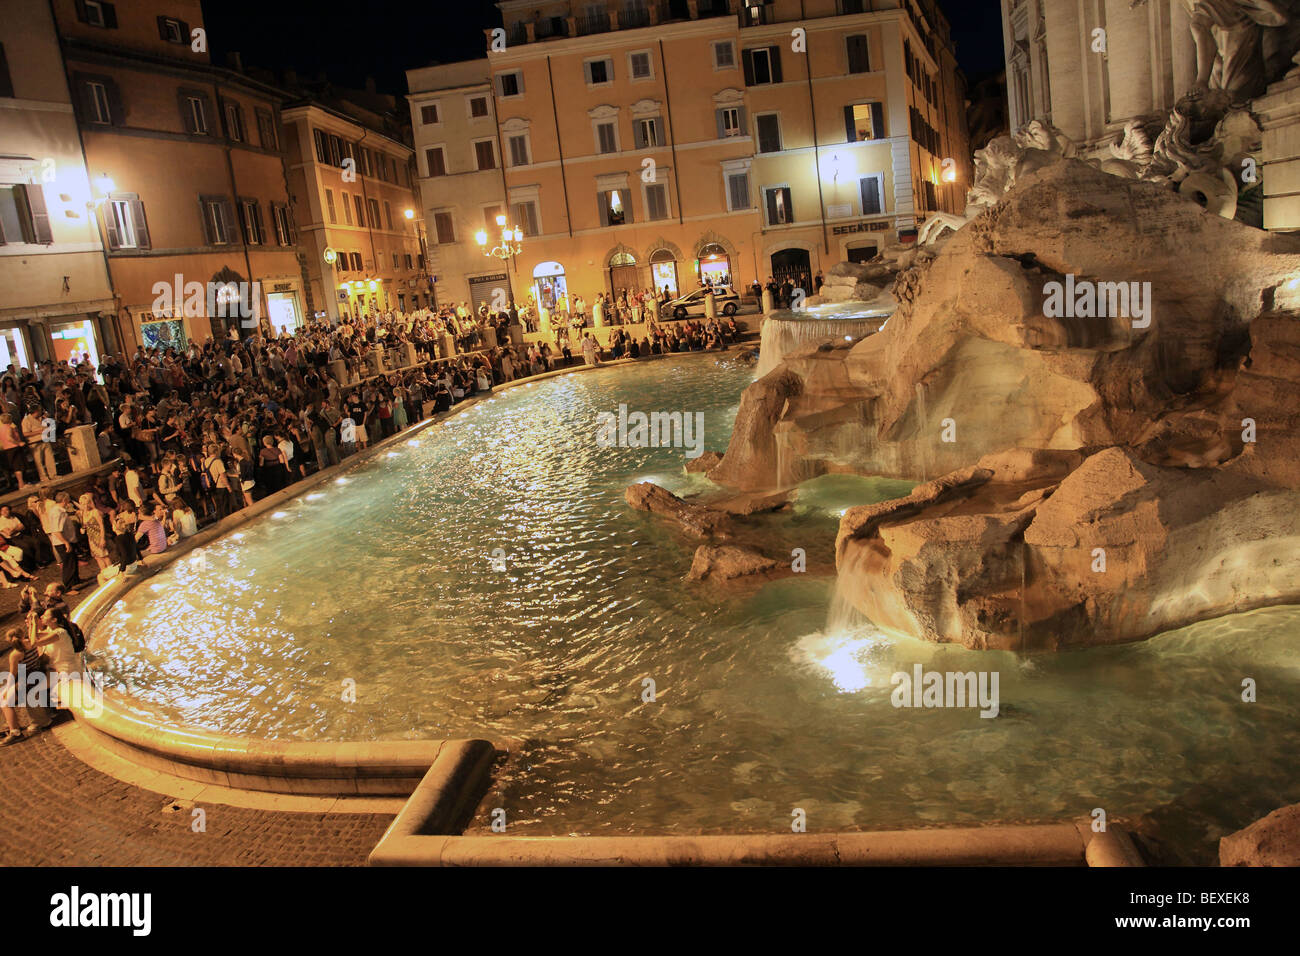 Las multitudes se reúnen alrededor de la fuente de Trevi (Fontana di Trevi) por la noche en Roma Foto de stock